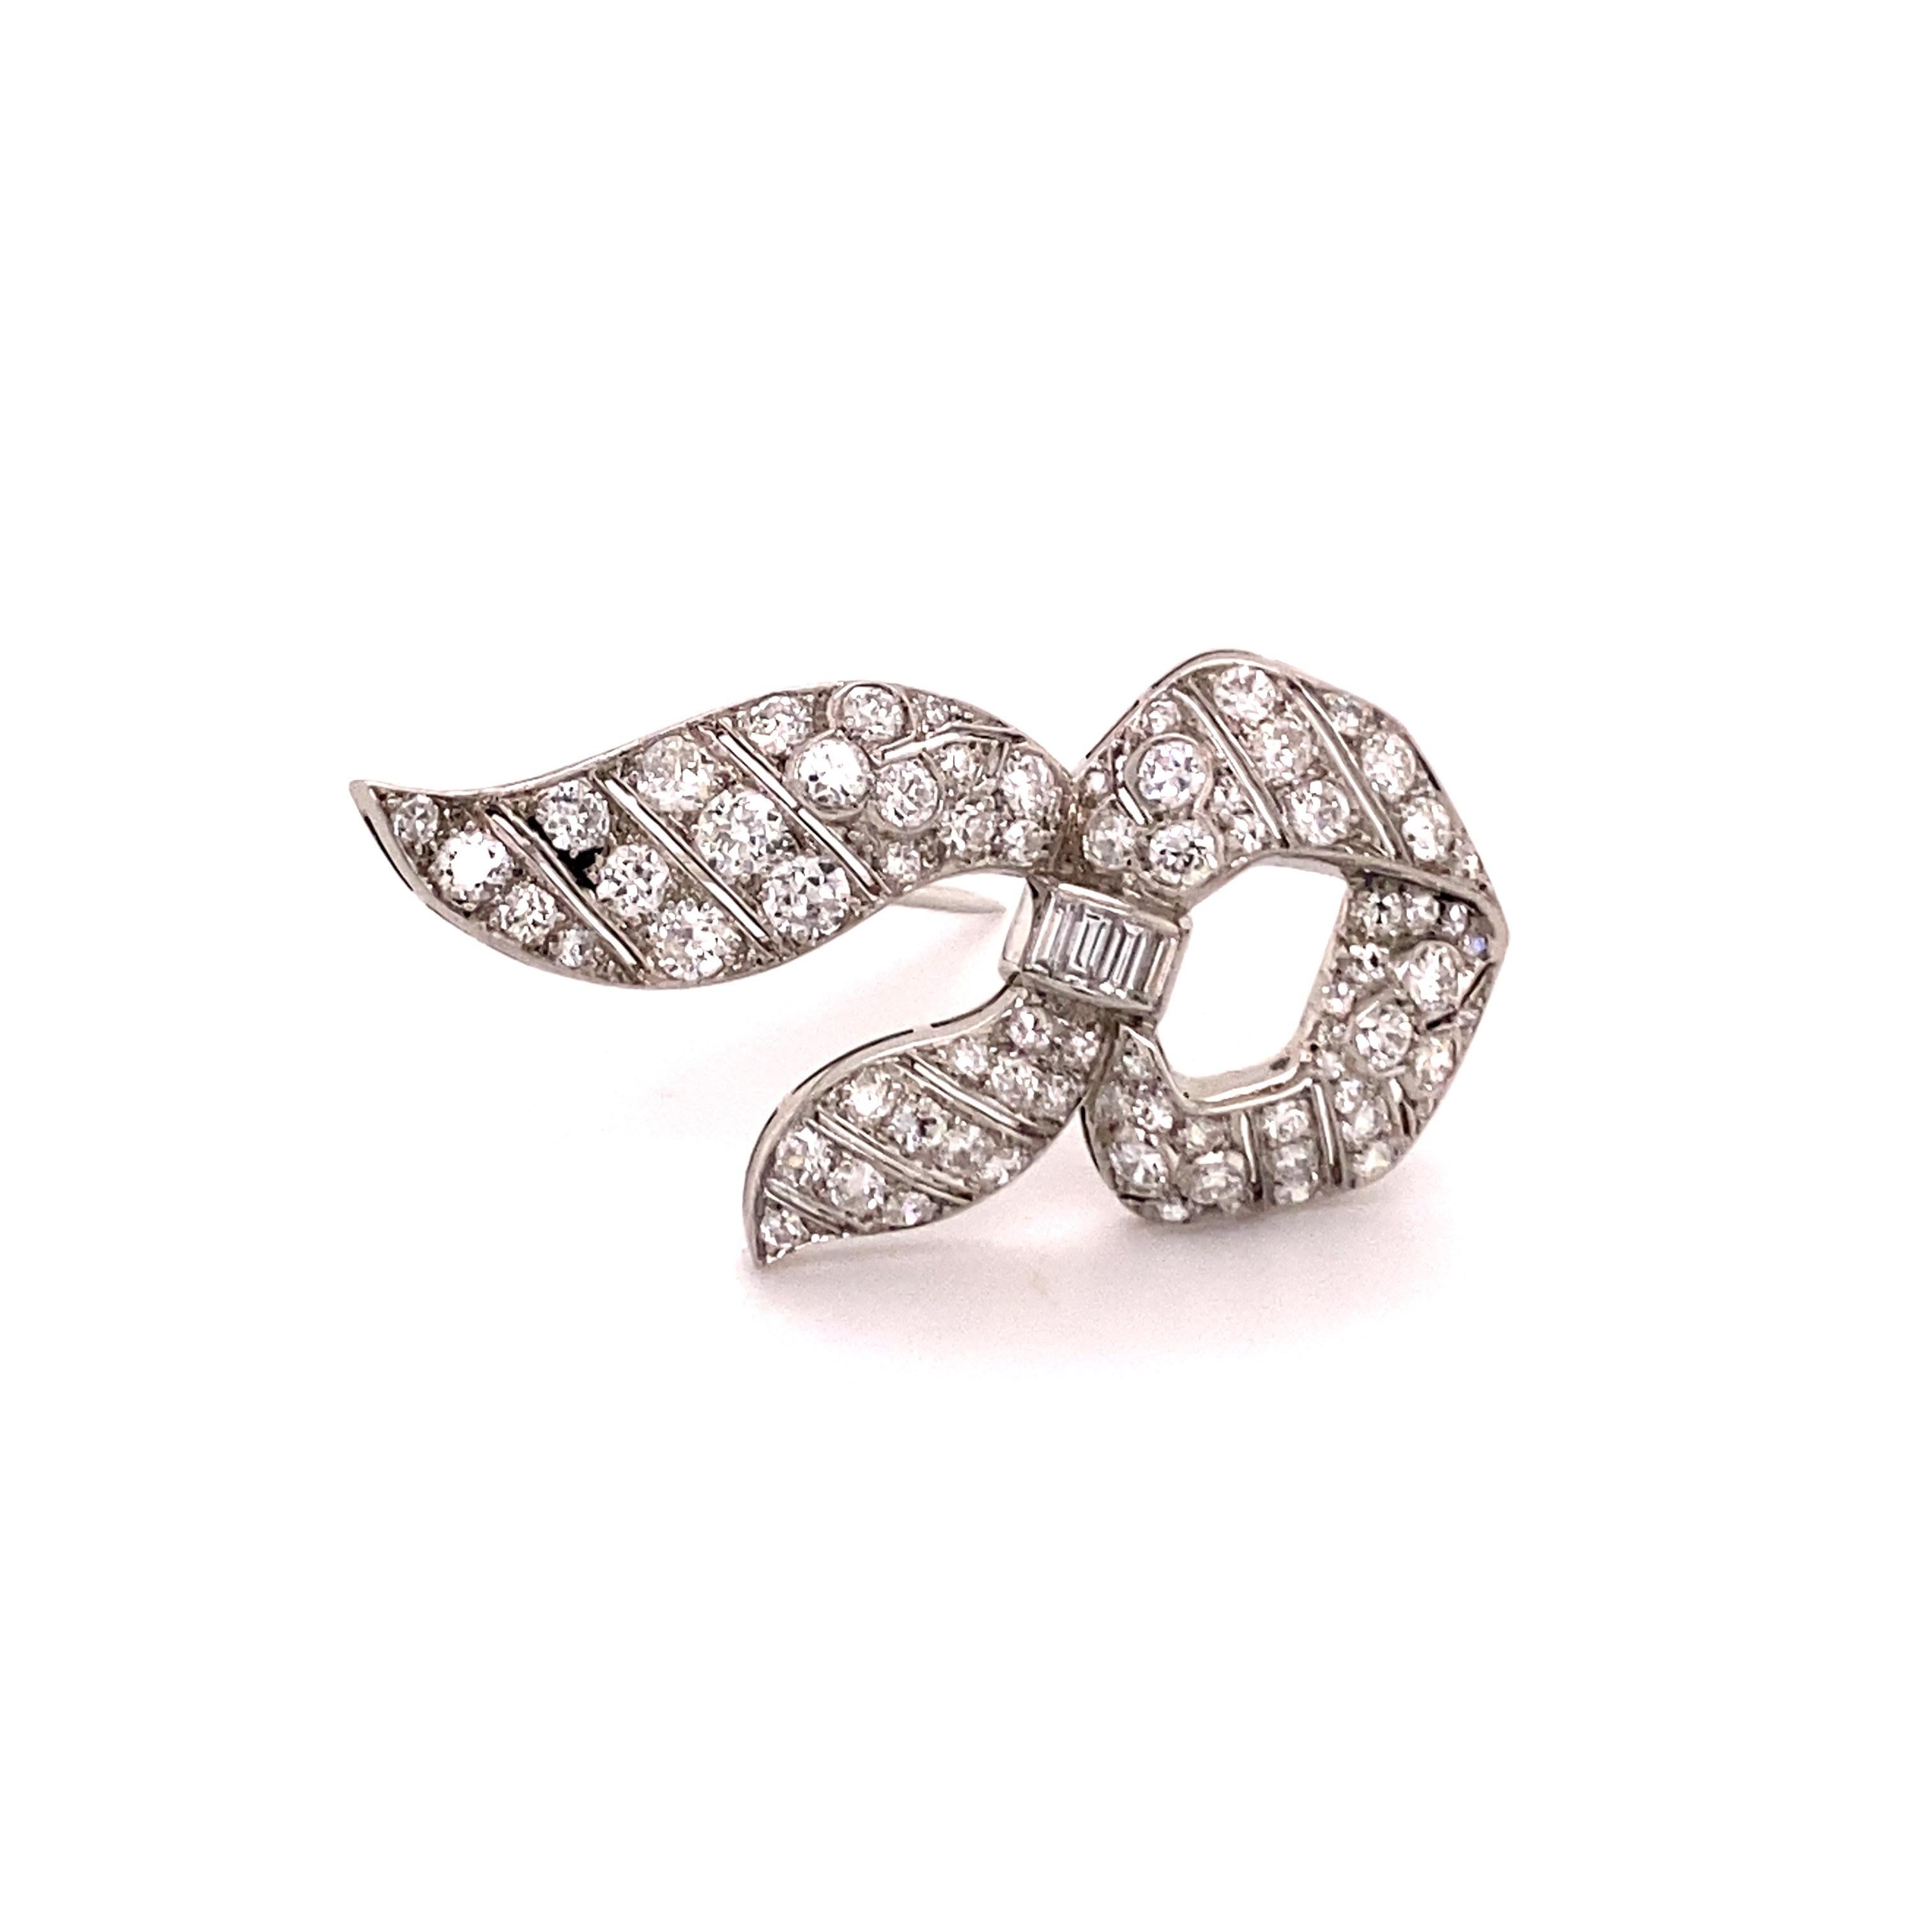 Cette magnifique broche des années 1950 présente environ 2,10 carats de diamants ronds de taille Brilliante et de taille Baguette sertis dans un motif de ruban. 

À jour worked - made in platinum. Une pièce très charmante.

Dimensions : 42 x 20 mm /